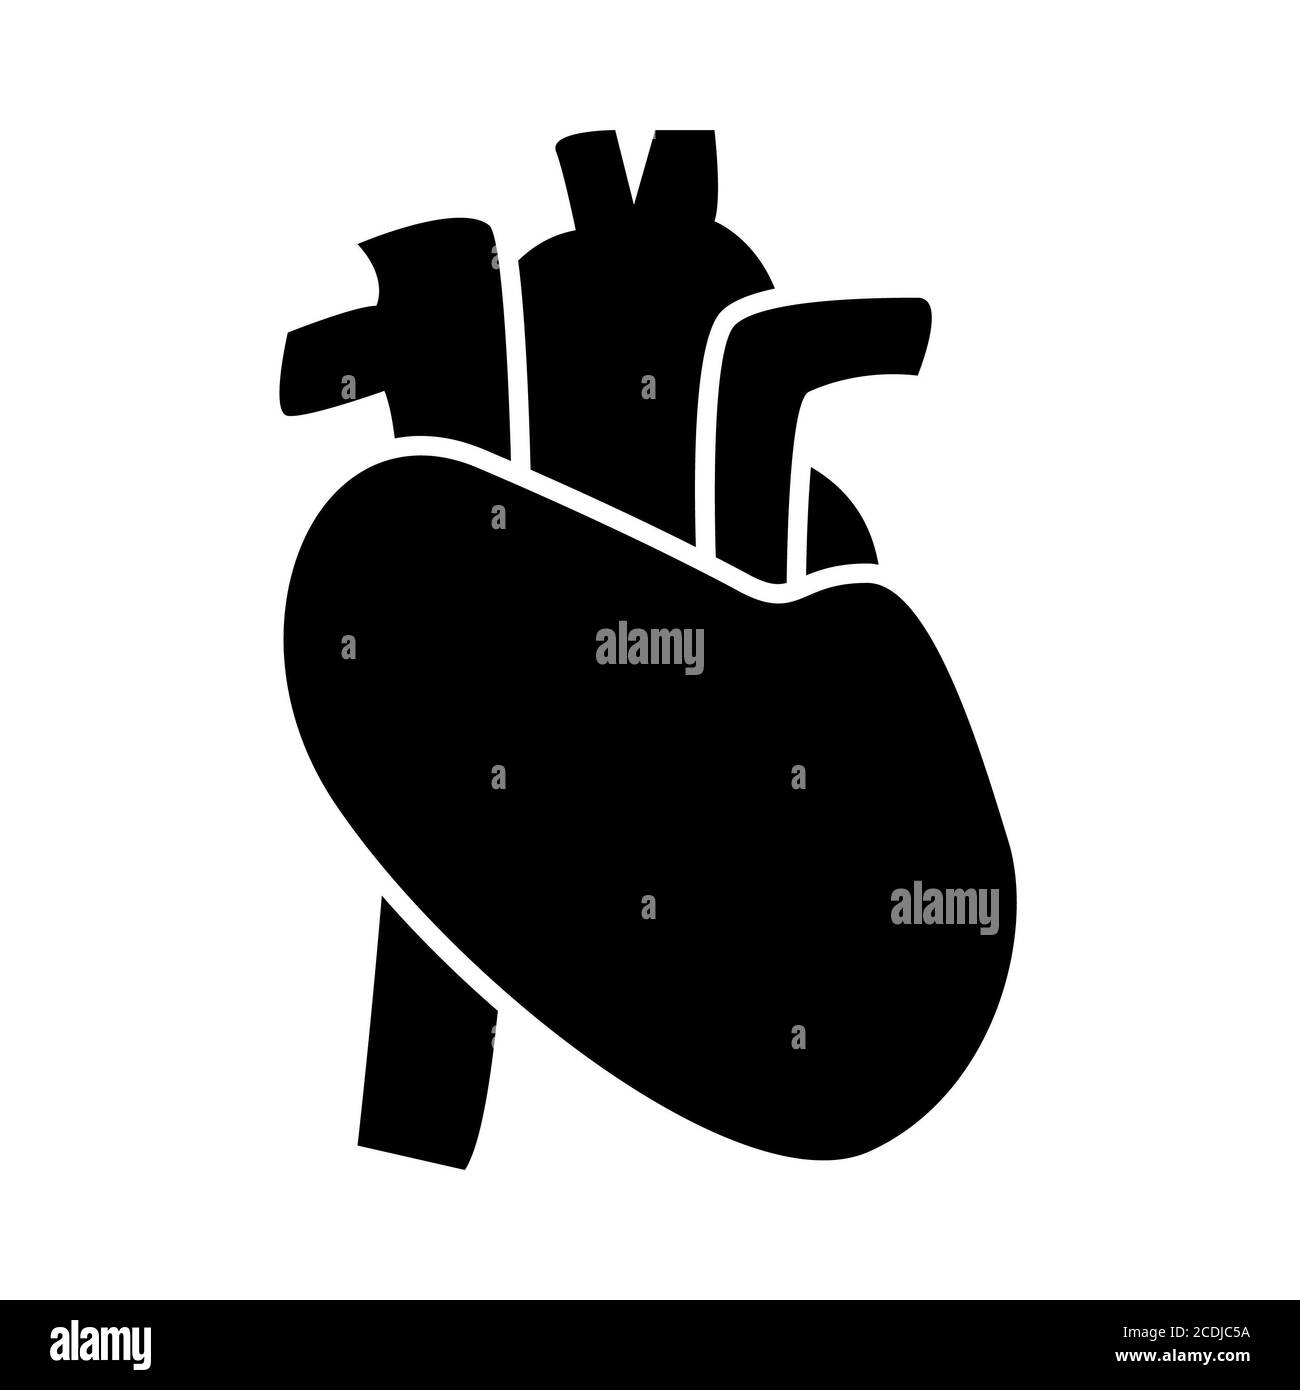 Icone del glifo dell'anatomia cardiaca Foto Stock